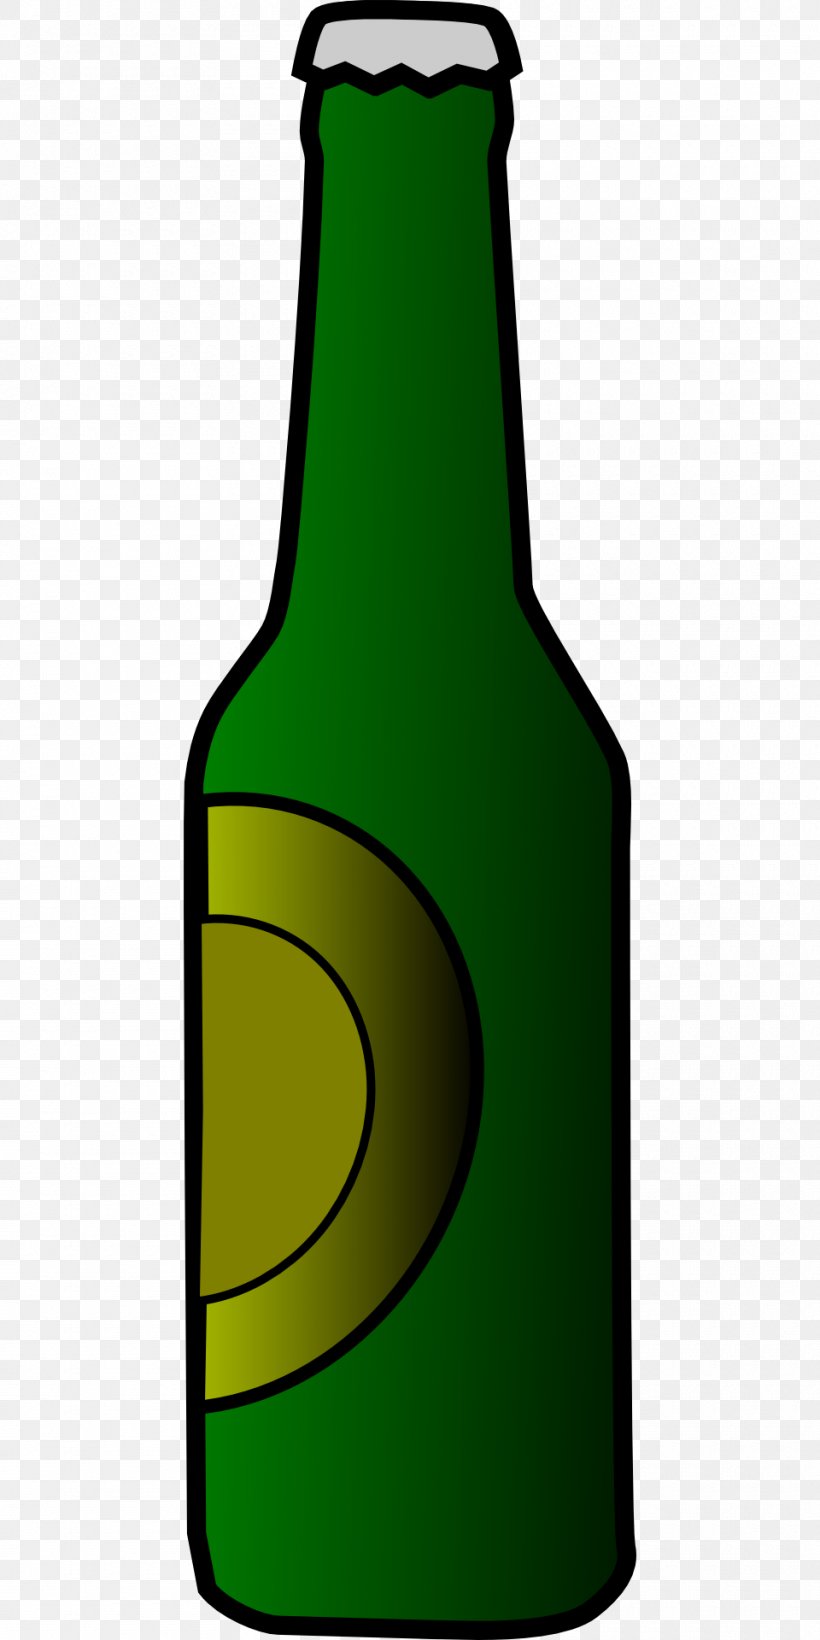 Beer Bottle Clip Art, PNG, 960x1920px, Beer, Alcoholic Drink, Beer Bottle, Beer Glasses, Beverage Can Download Free